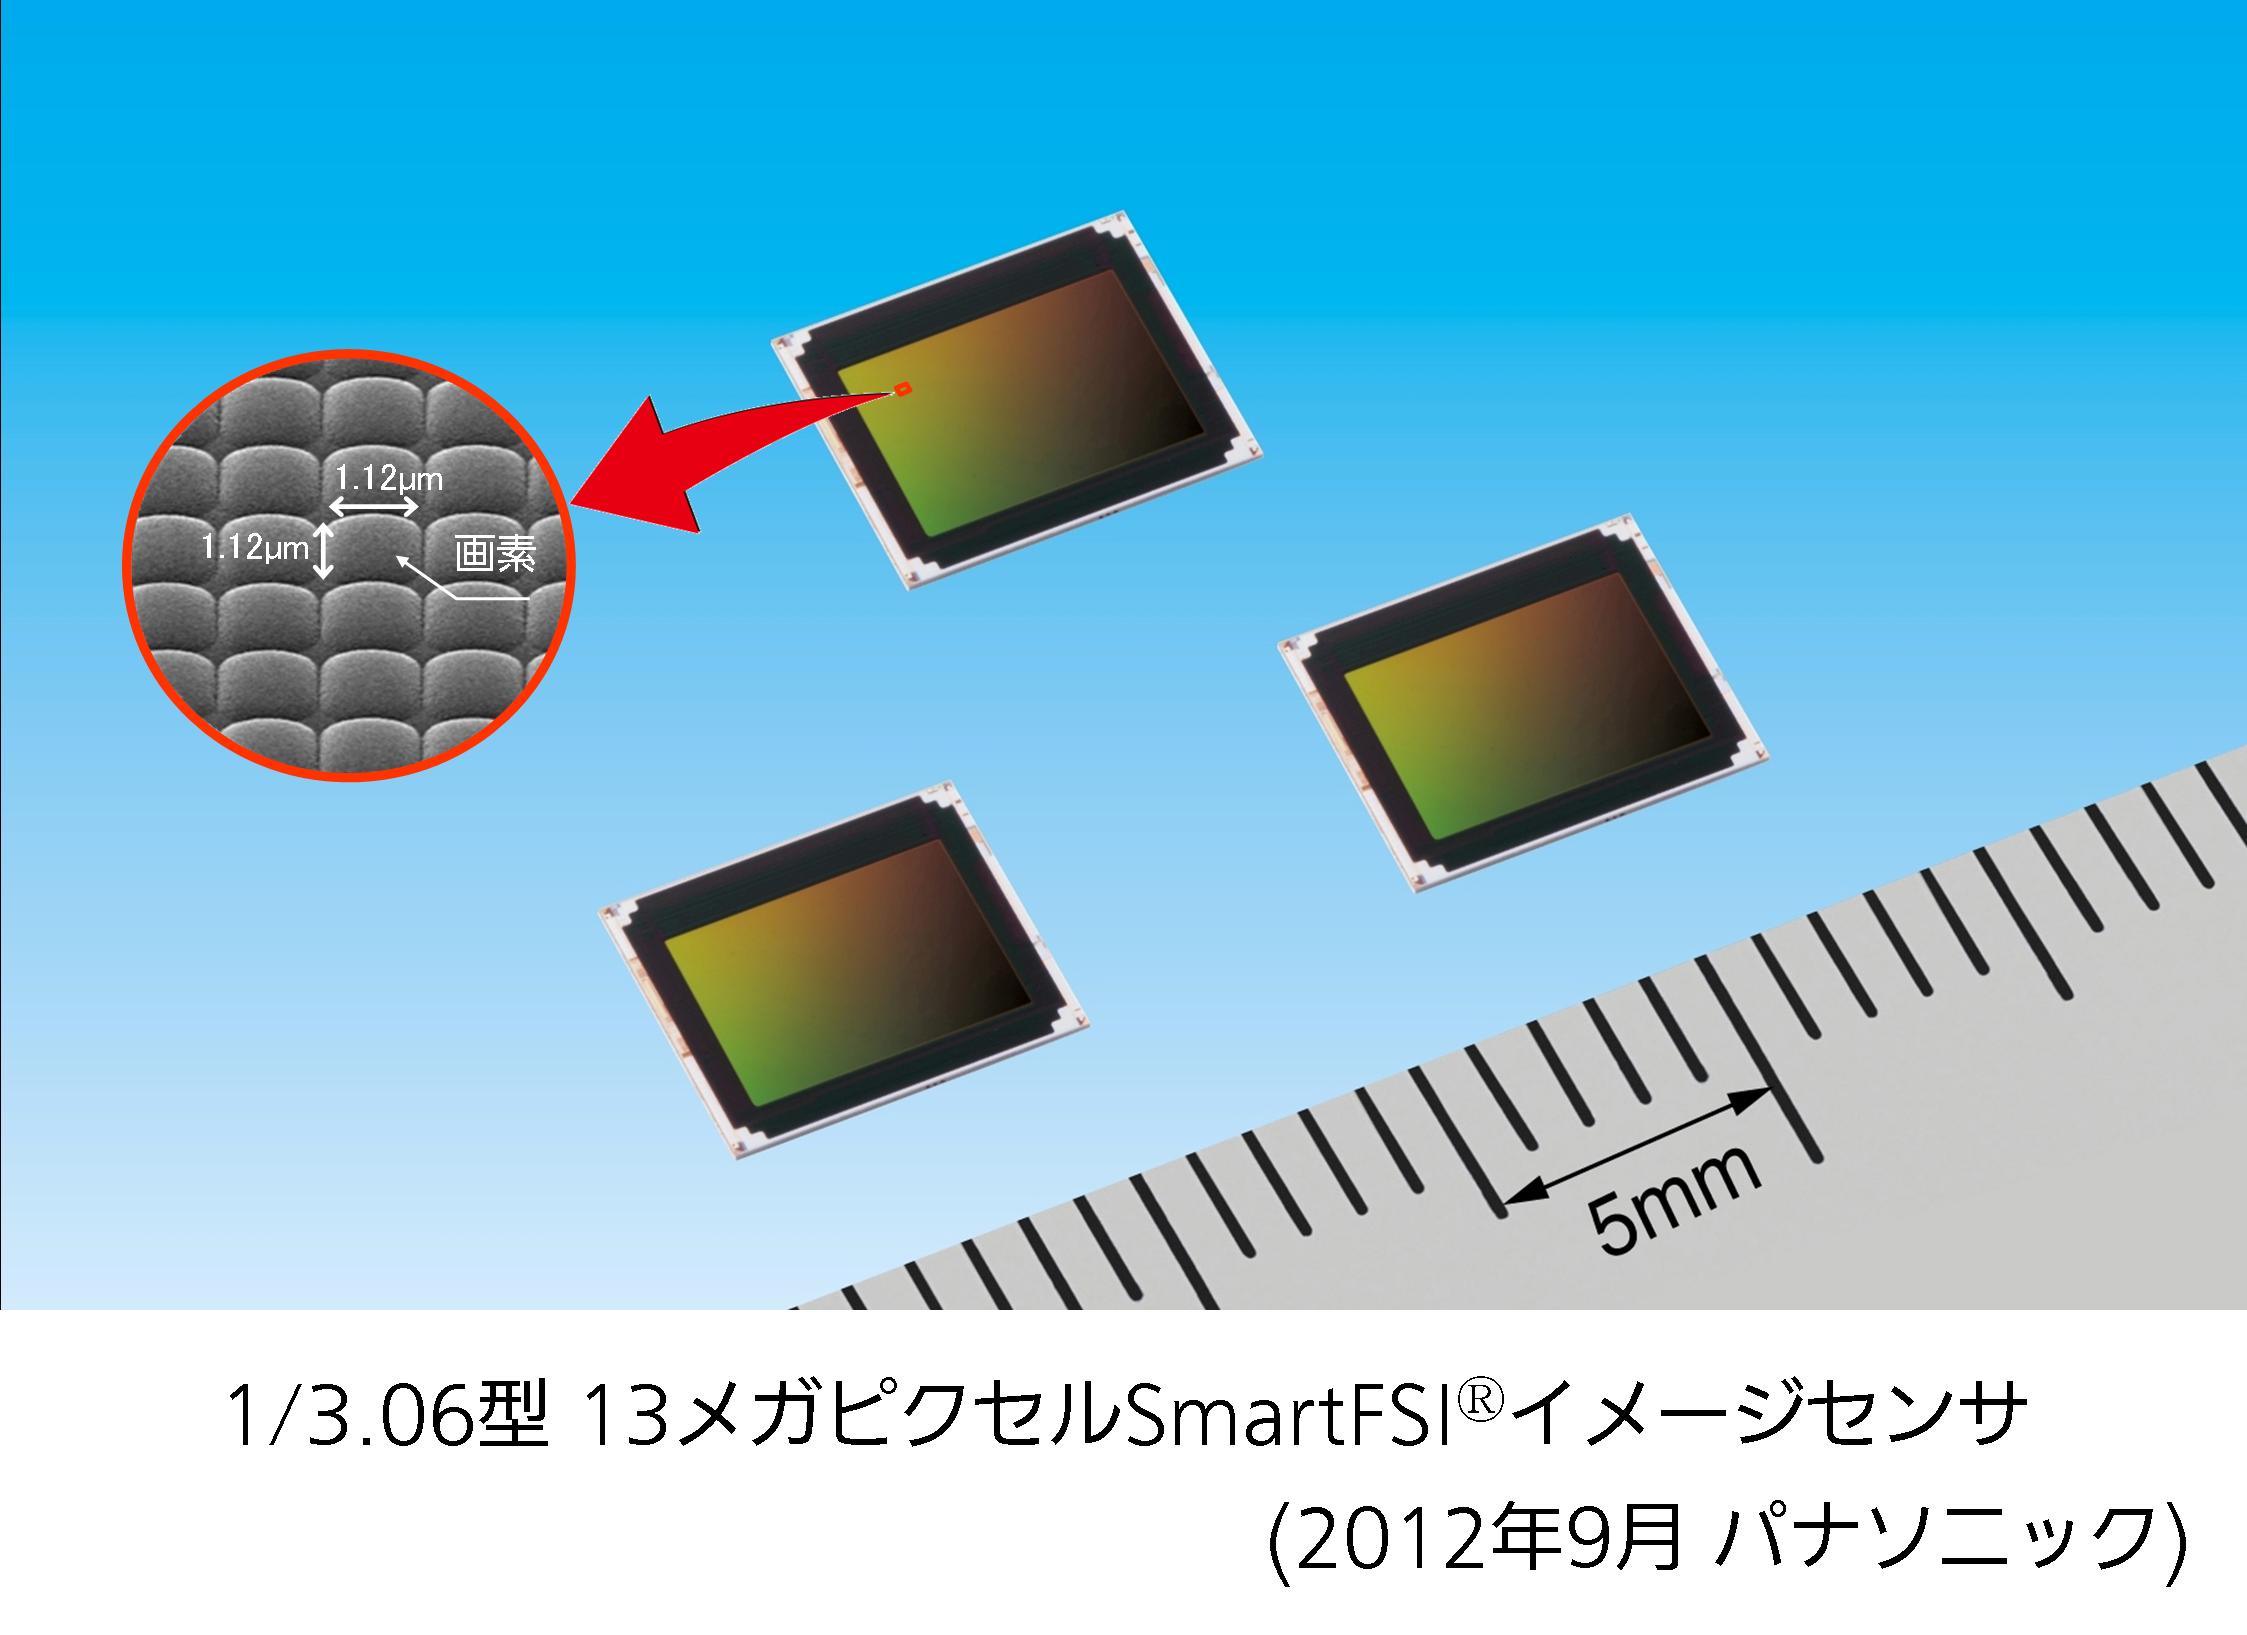 1/3.06型 13メガピクセルSmartFSIイメージセンサ